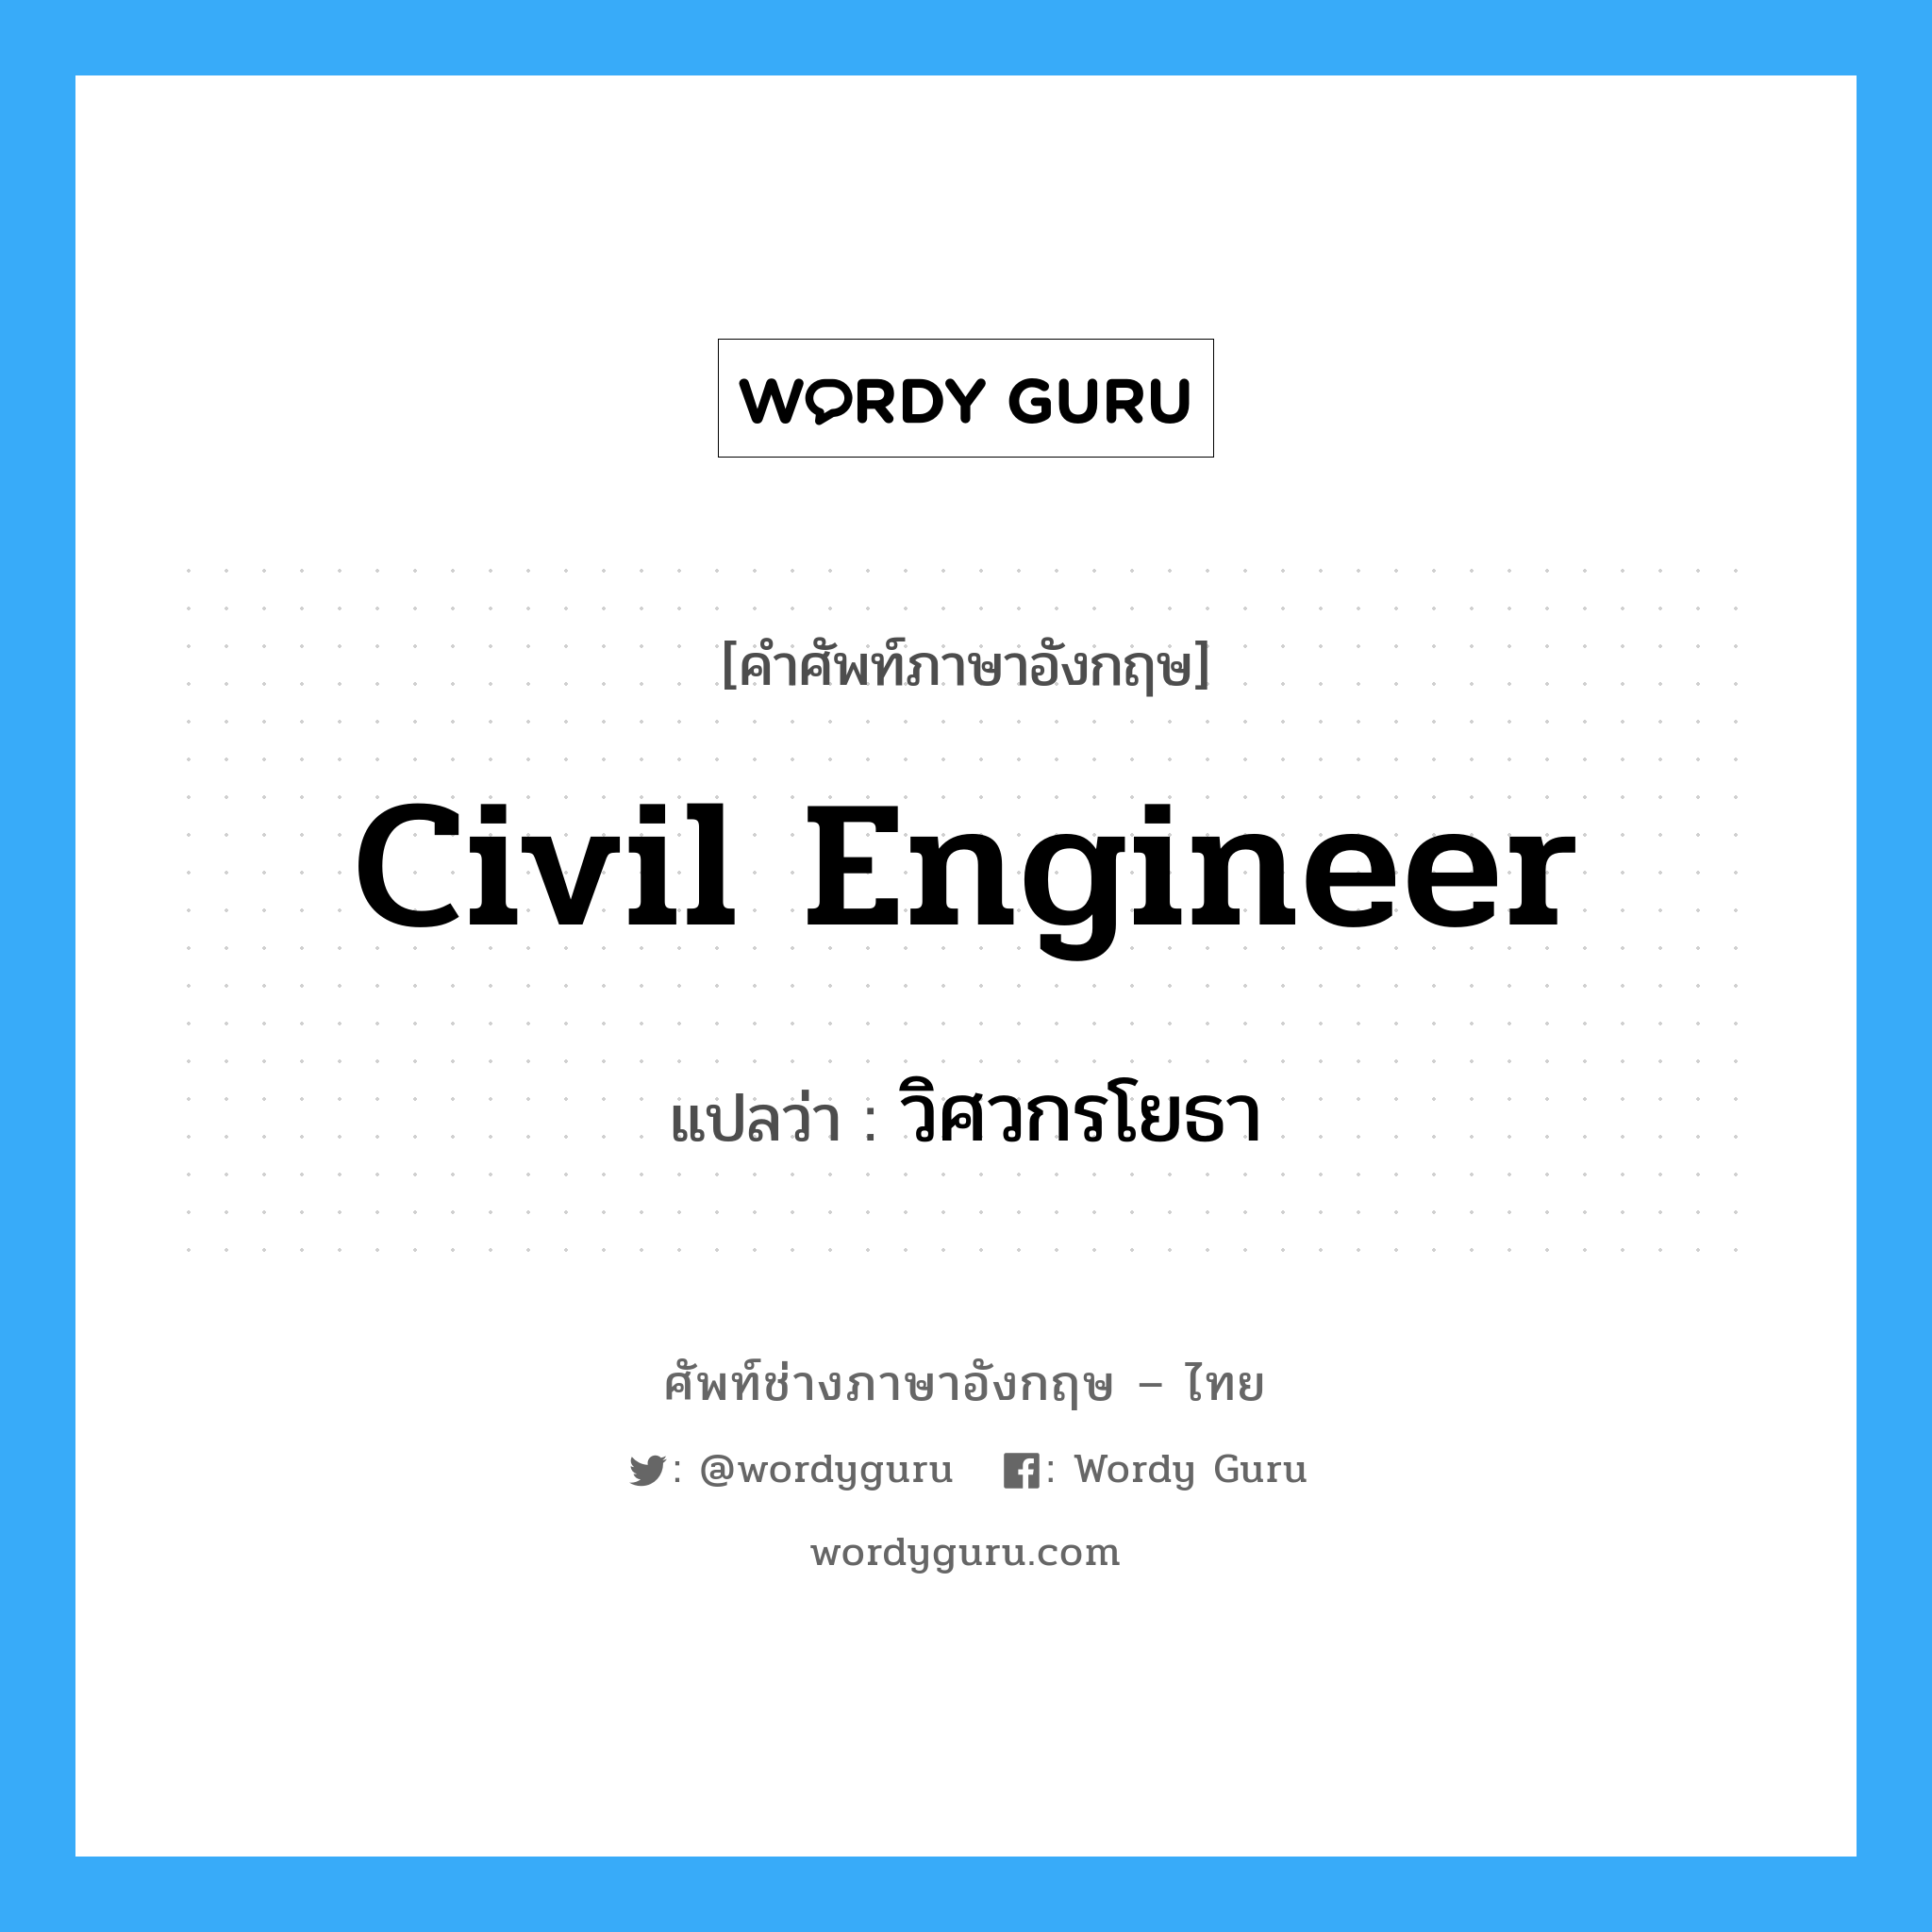 civil engineer แปลว่า?, คำศัพท์ช่างภาษาอังกฤษ - ไทย civil engineer คำศัพท์ภาษาอังกฤษ civil engineer แปลว่า วิศวกรโยธา